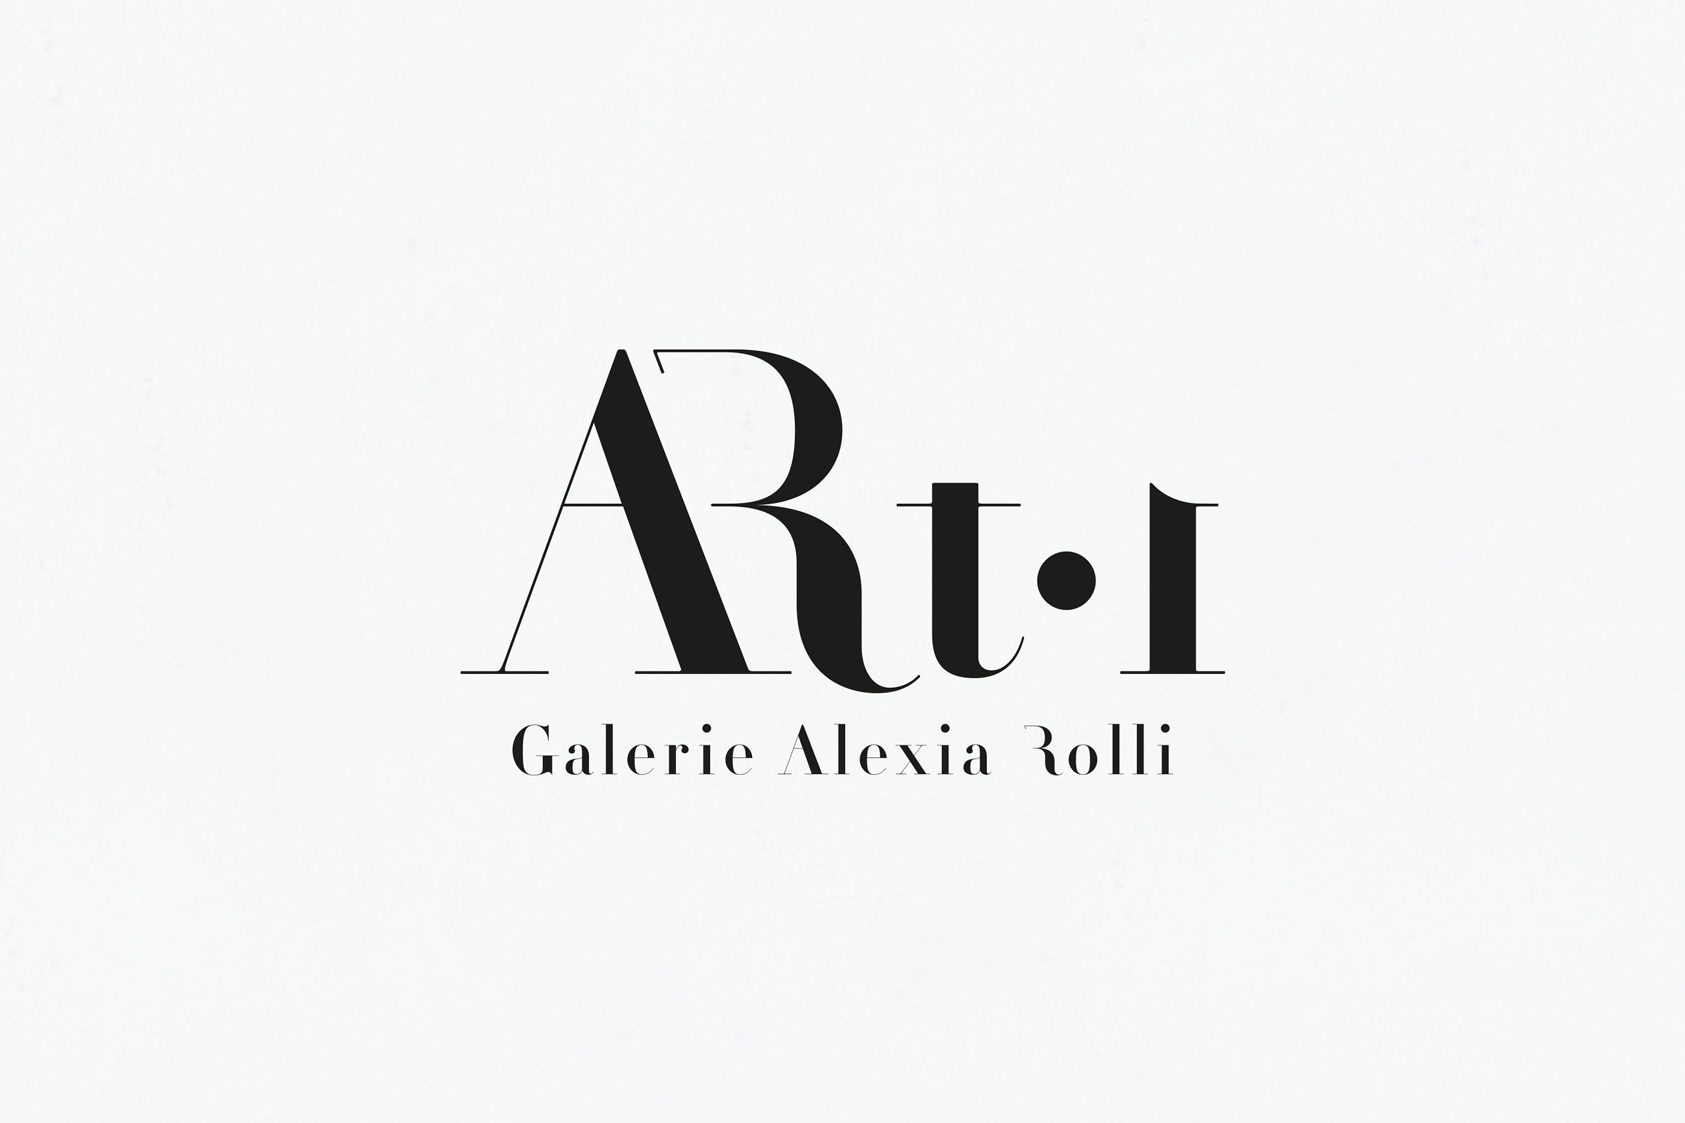 ARTI GALERIE ALEXIA ROLLI